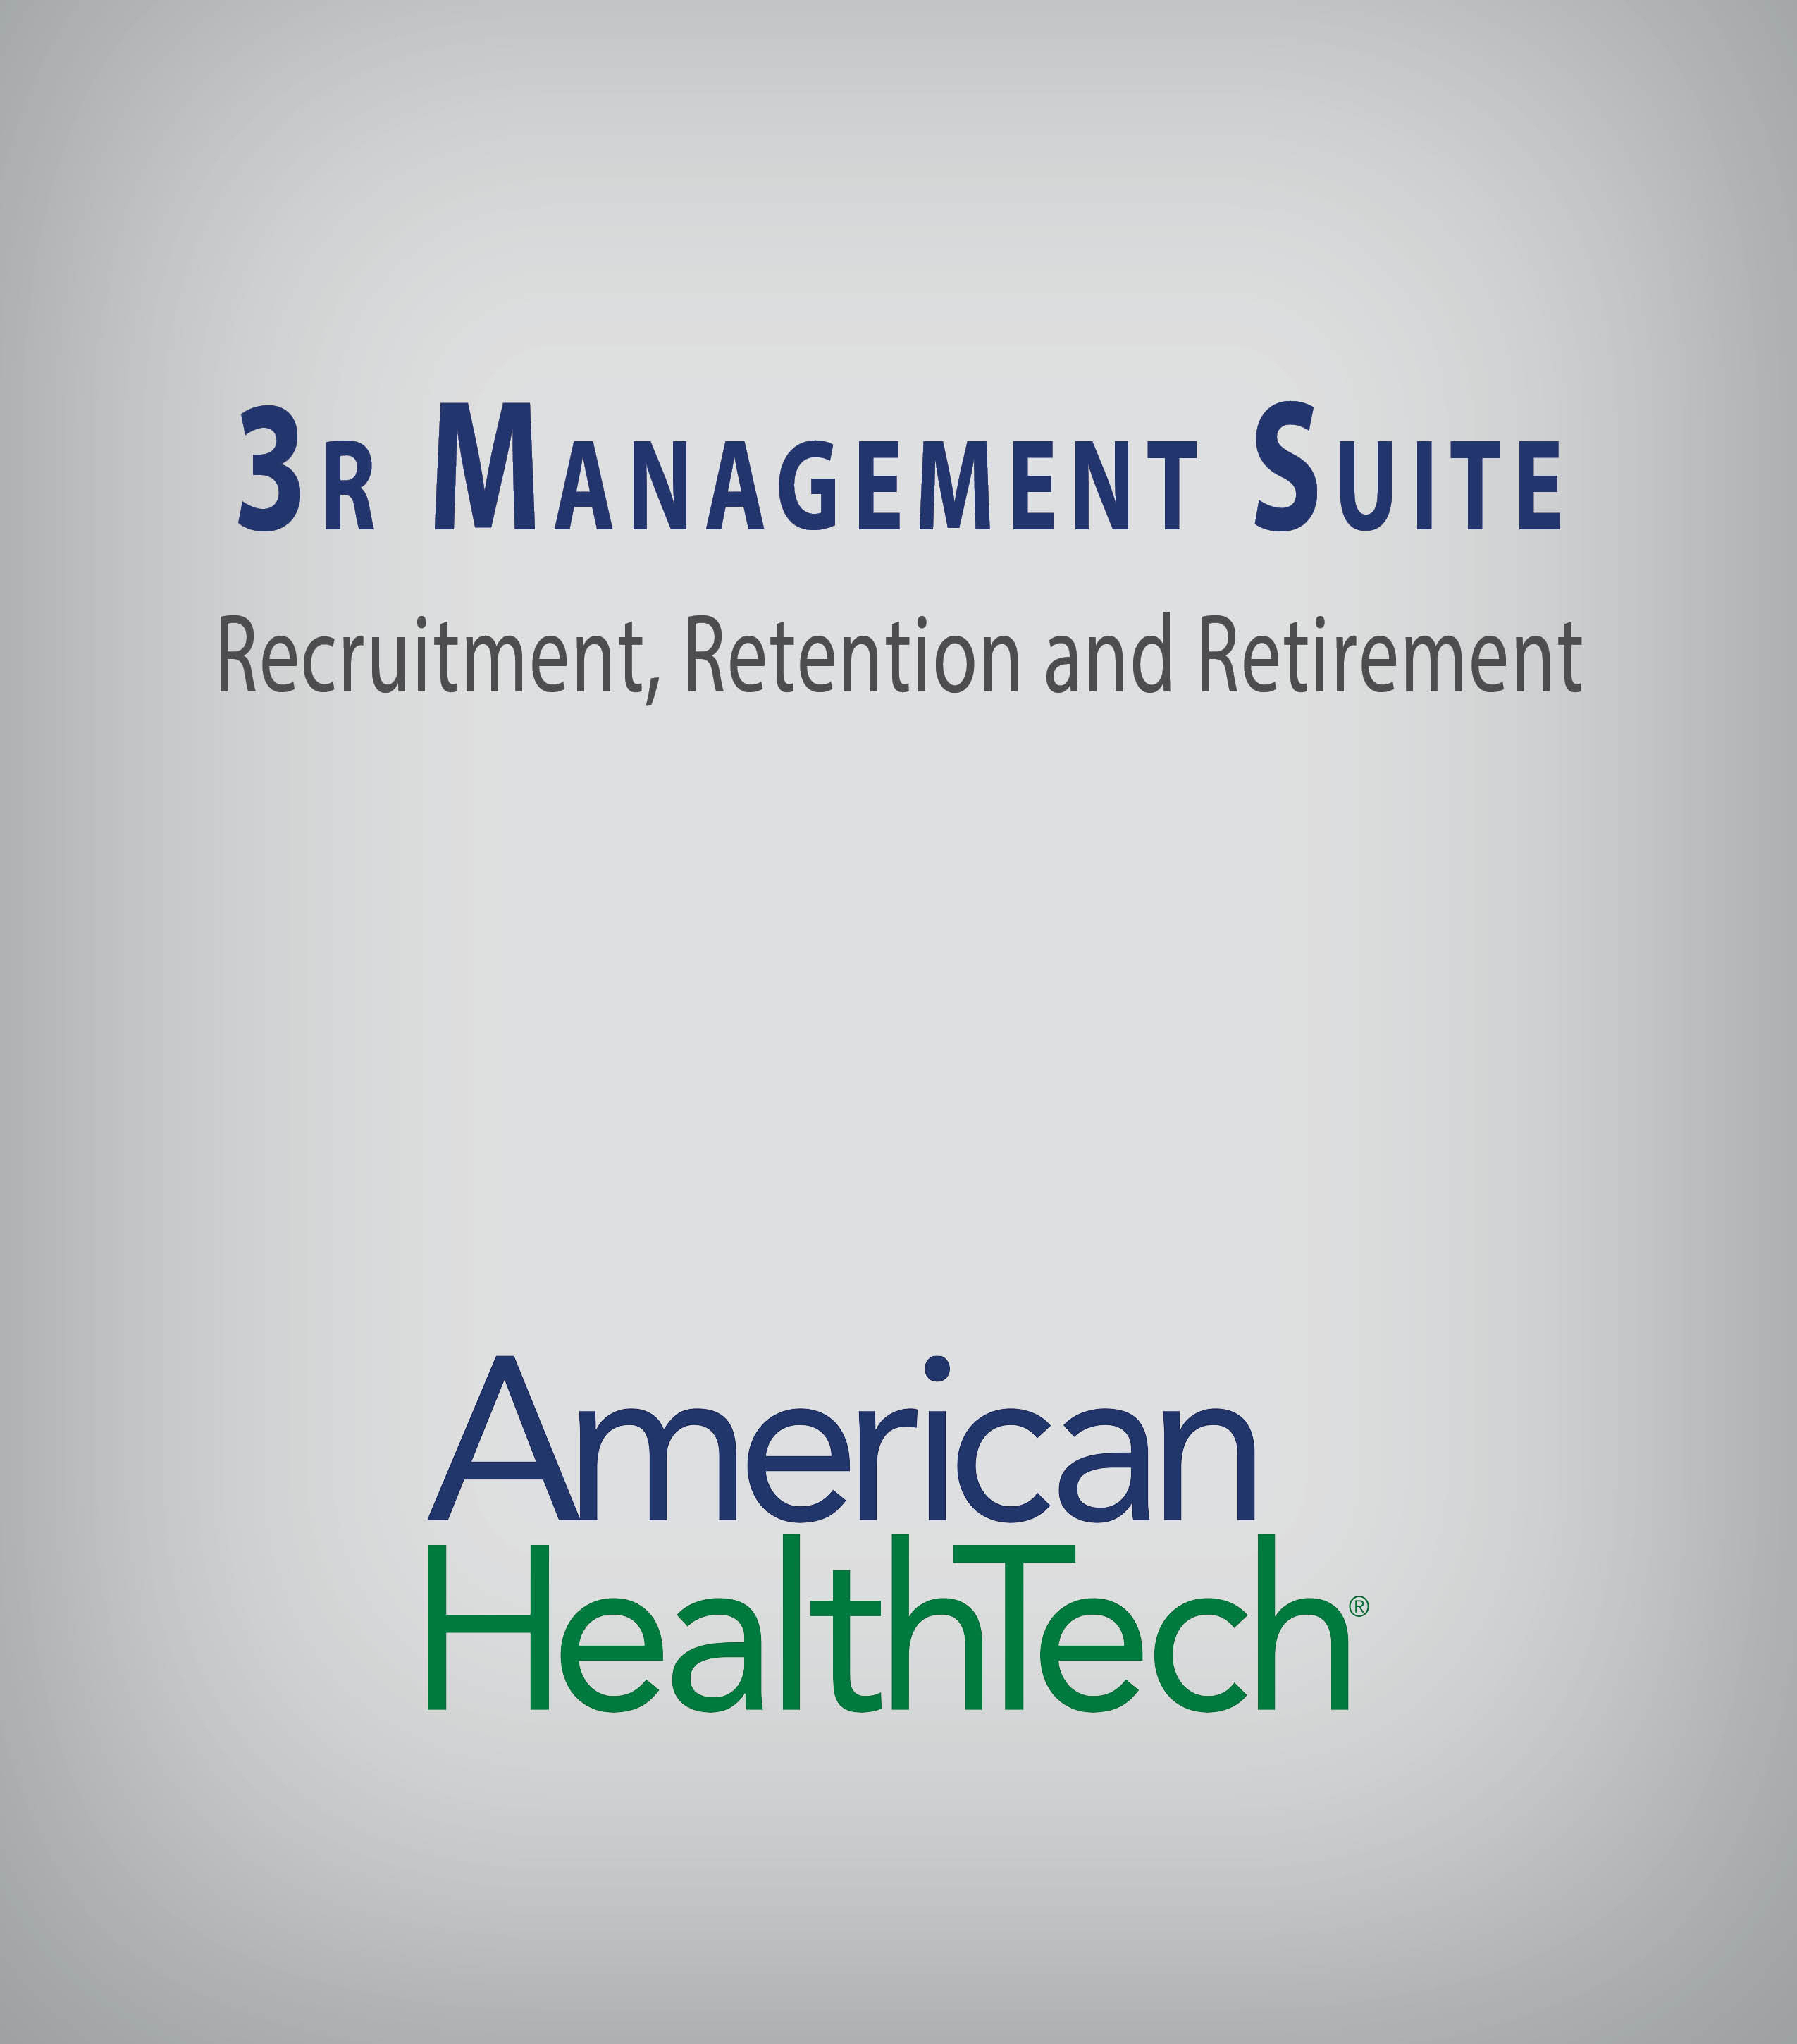 3R Management Suite